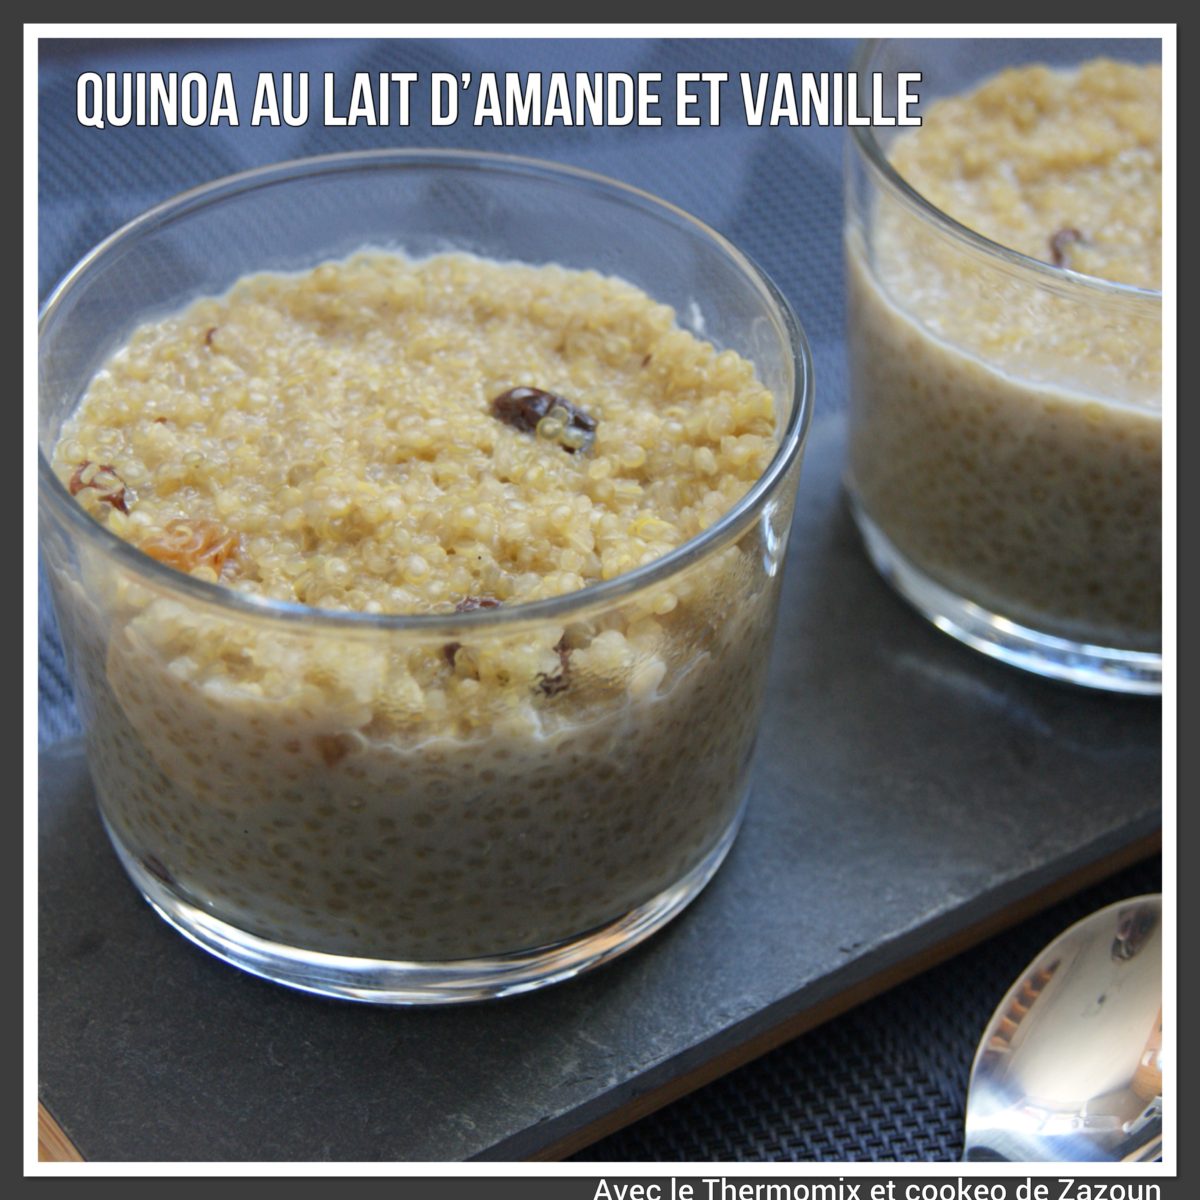 Quinoa au lait d’amande Thermomix companion, i cook ’ in ou autres robots chauffants sans lait ni gluten’